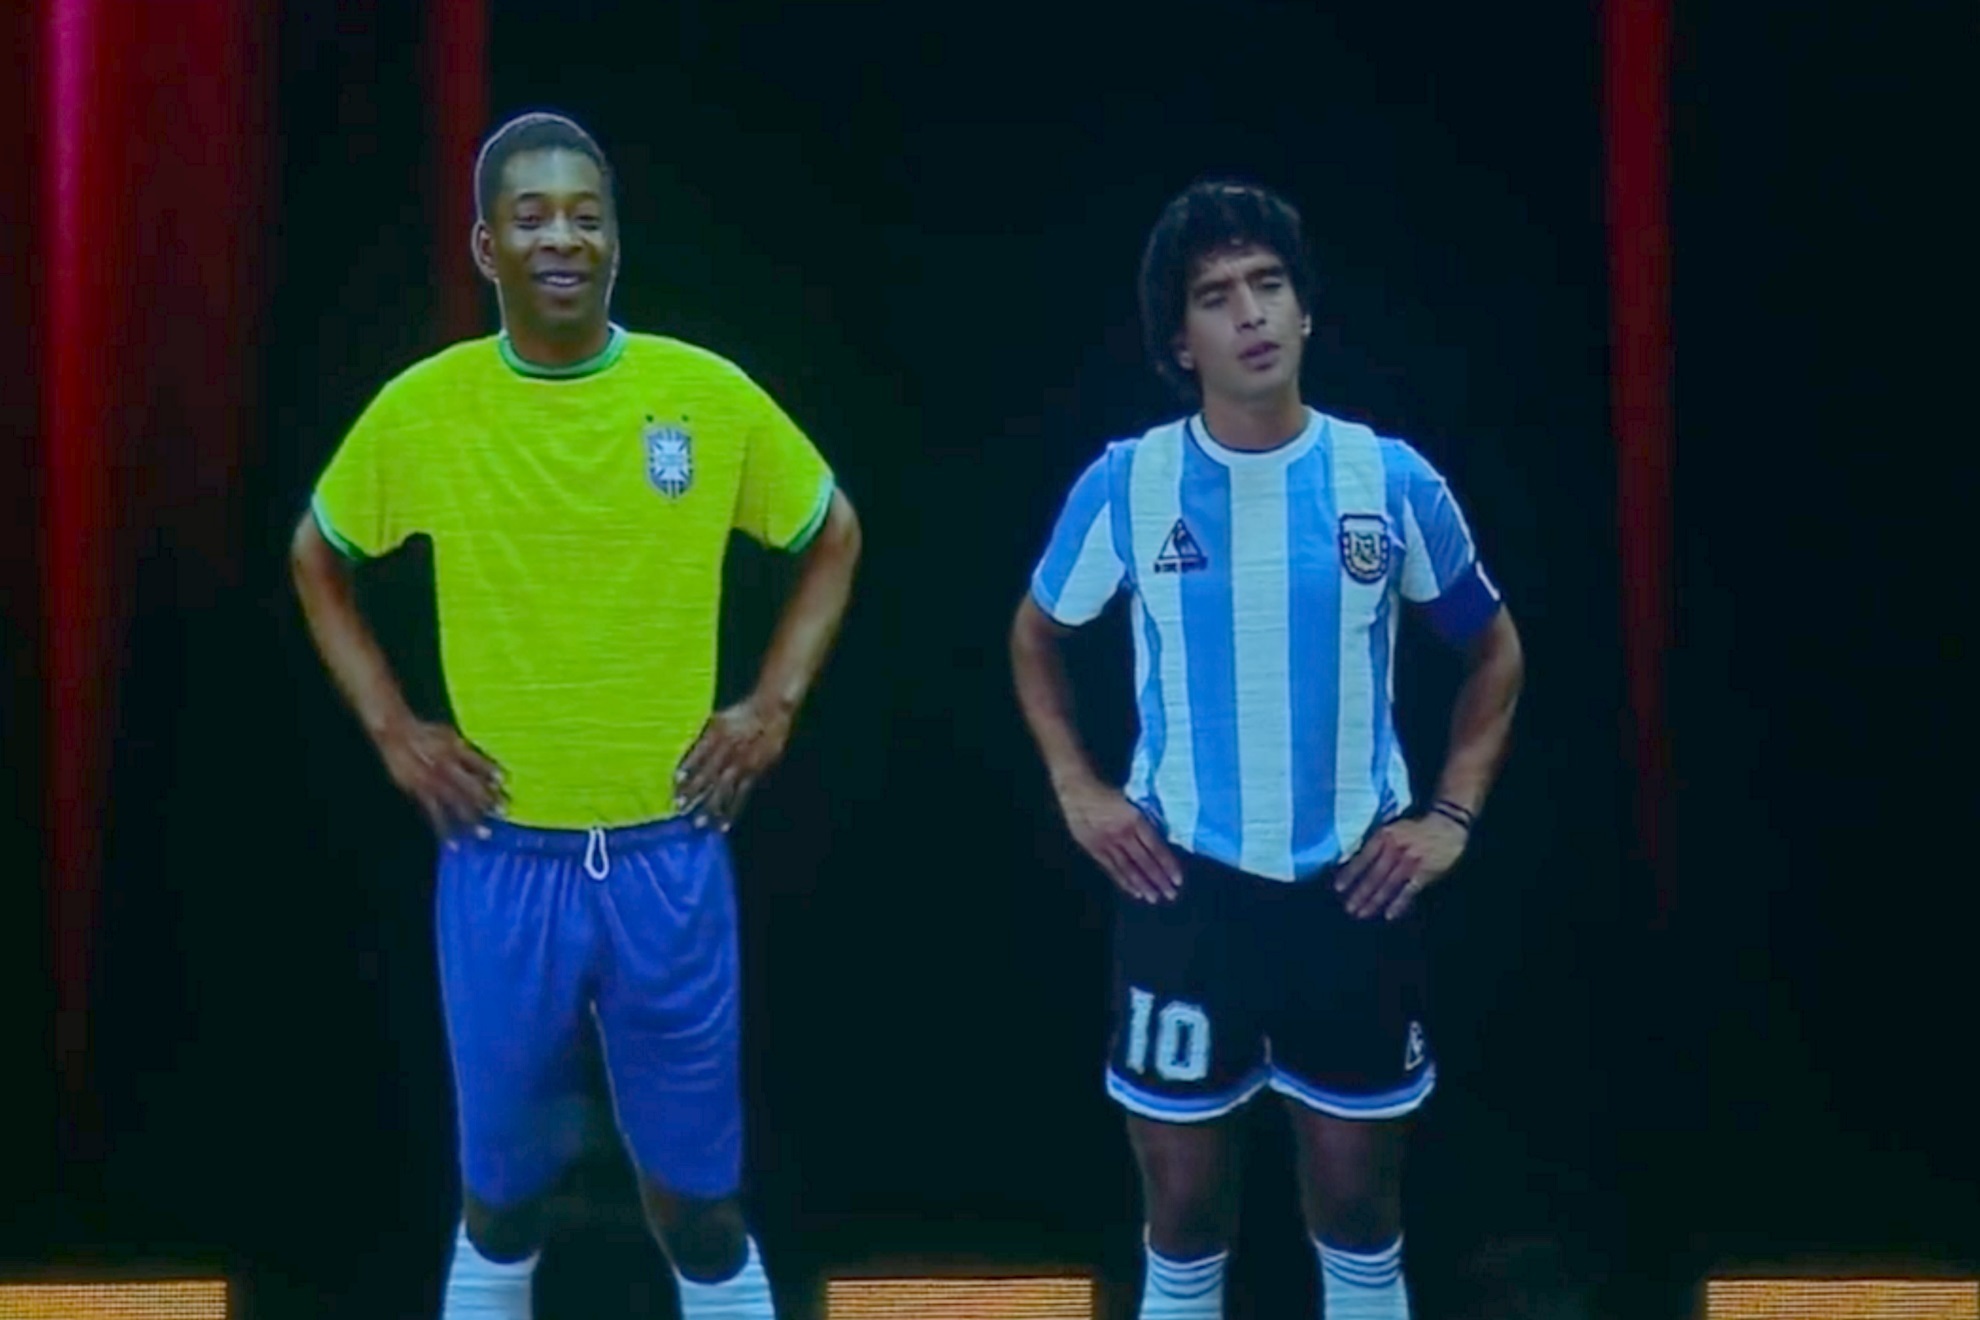 O Rei Pelé Diego Armando Maradona Pelusa tecnología hologramas Lionel Leo Messi Gala Conmebol Selección Argentina Mundial Qatar 2022 Asunción Paraguay